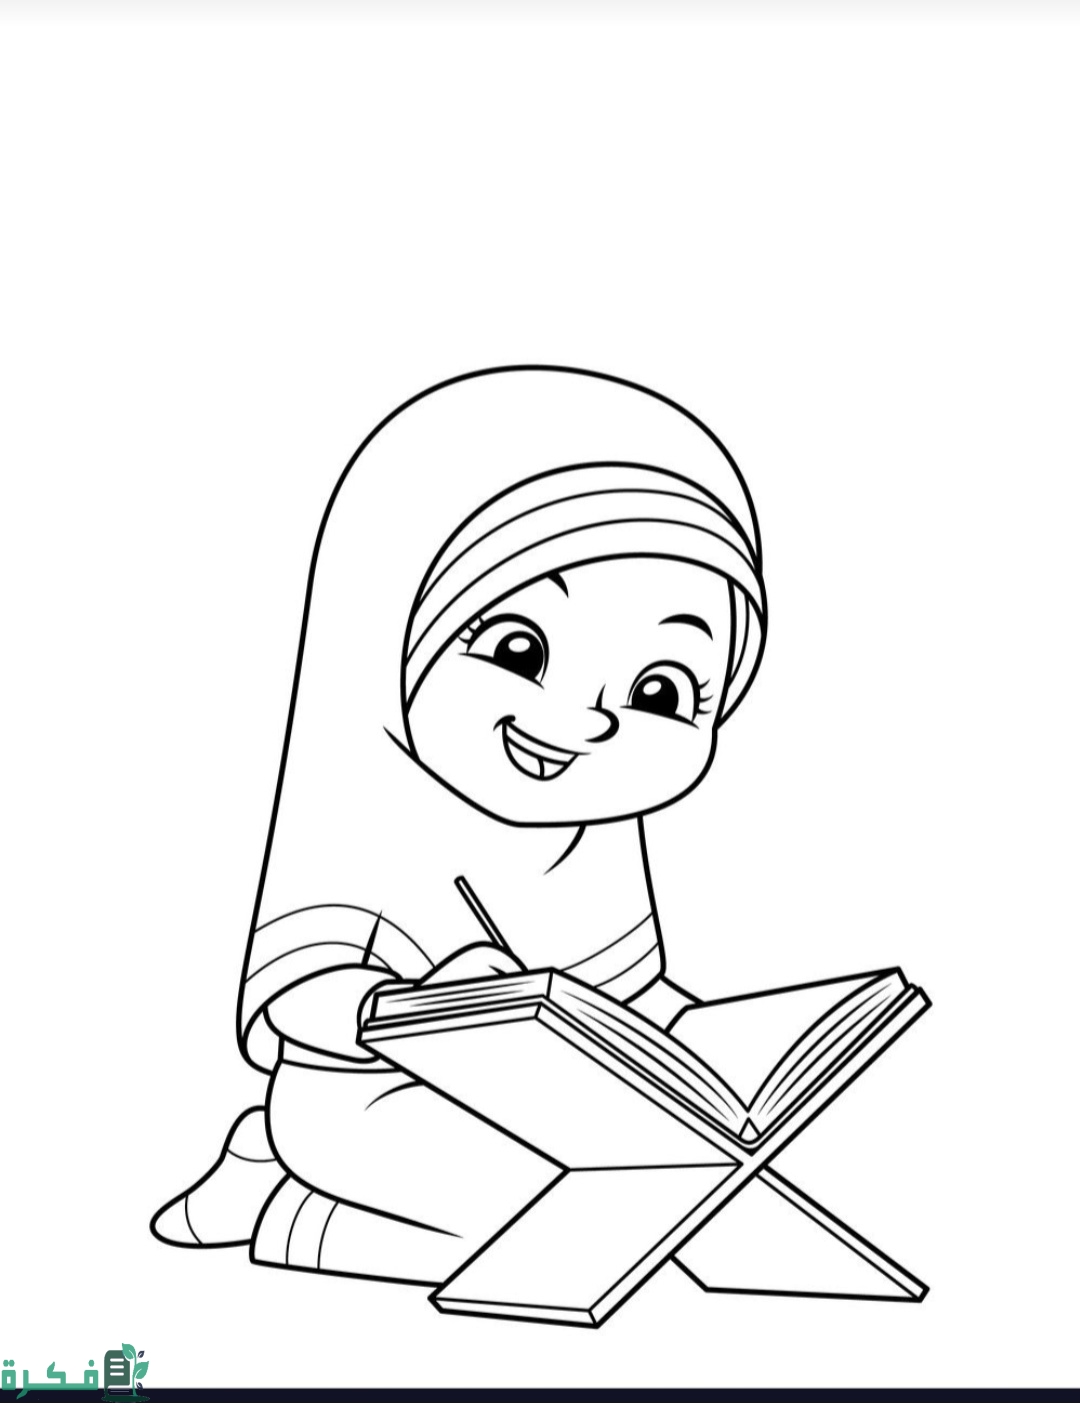 تحميل رسومات عن شهر رمضان للأطفال جاهزة للتلوين